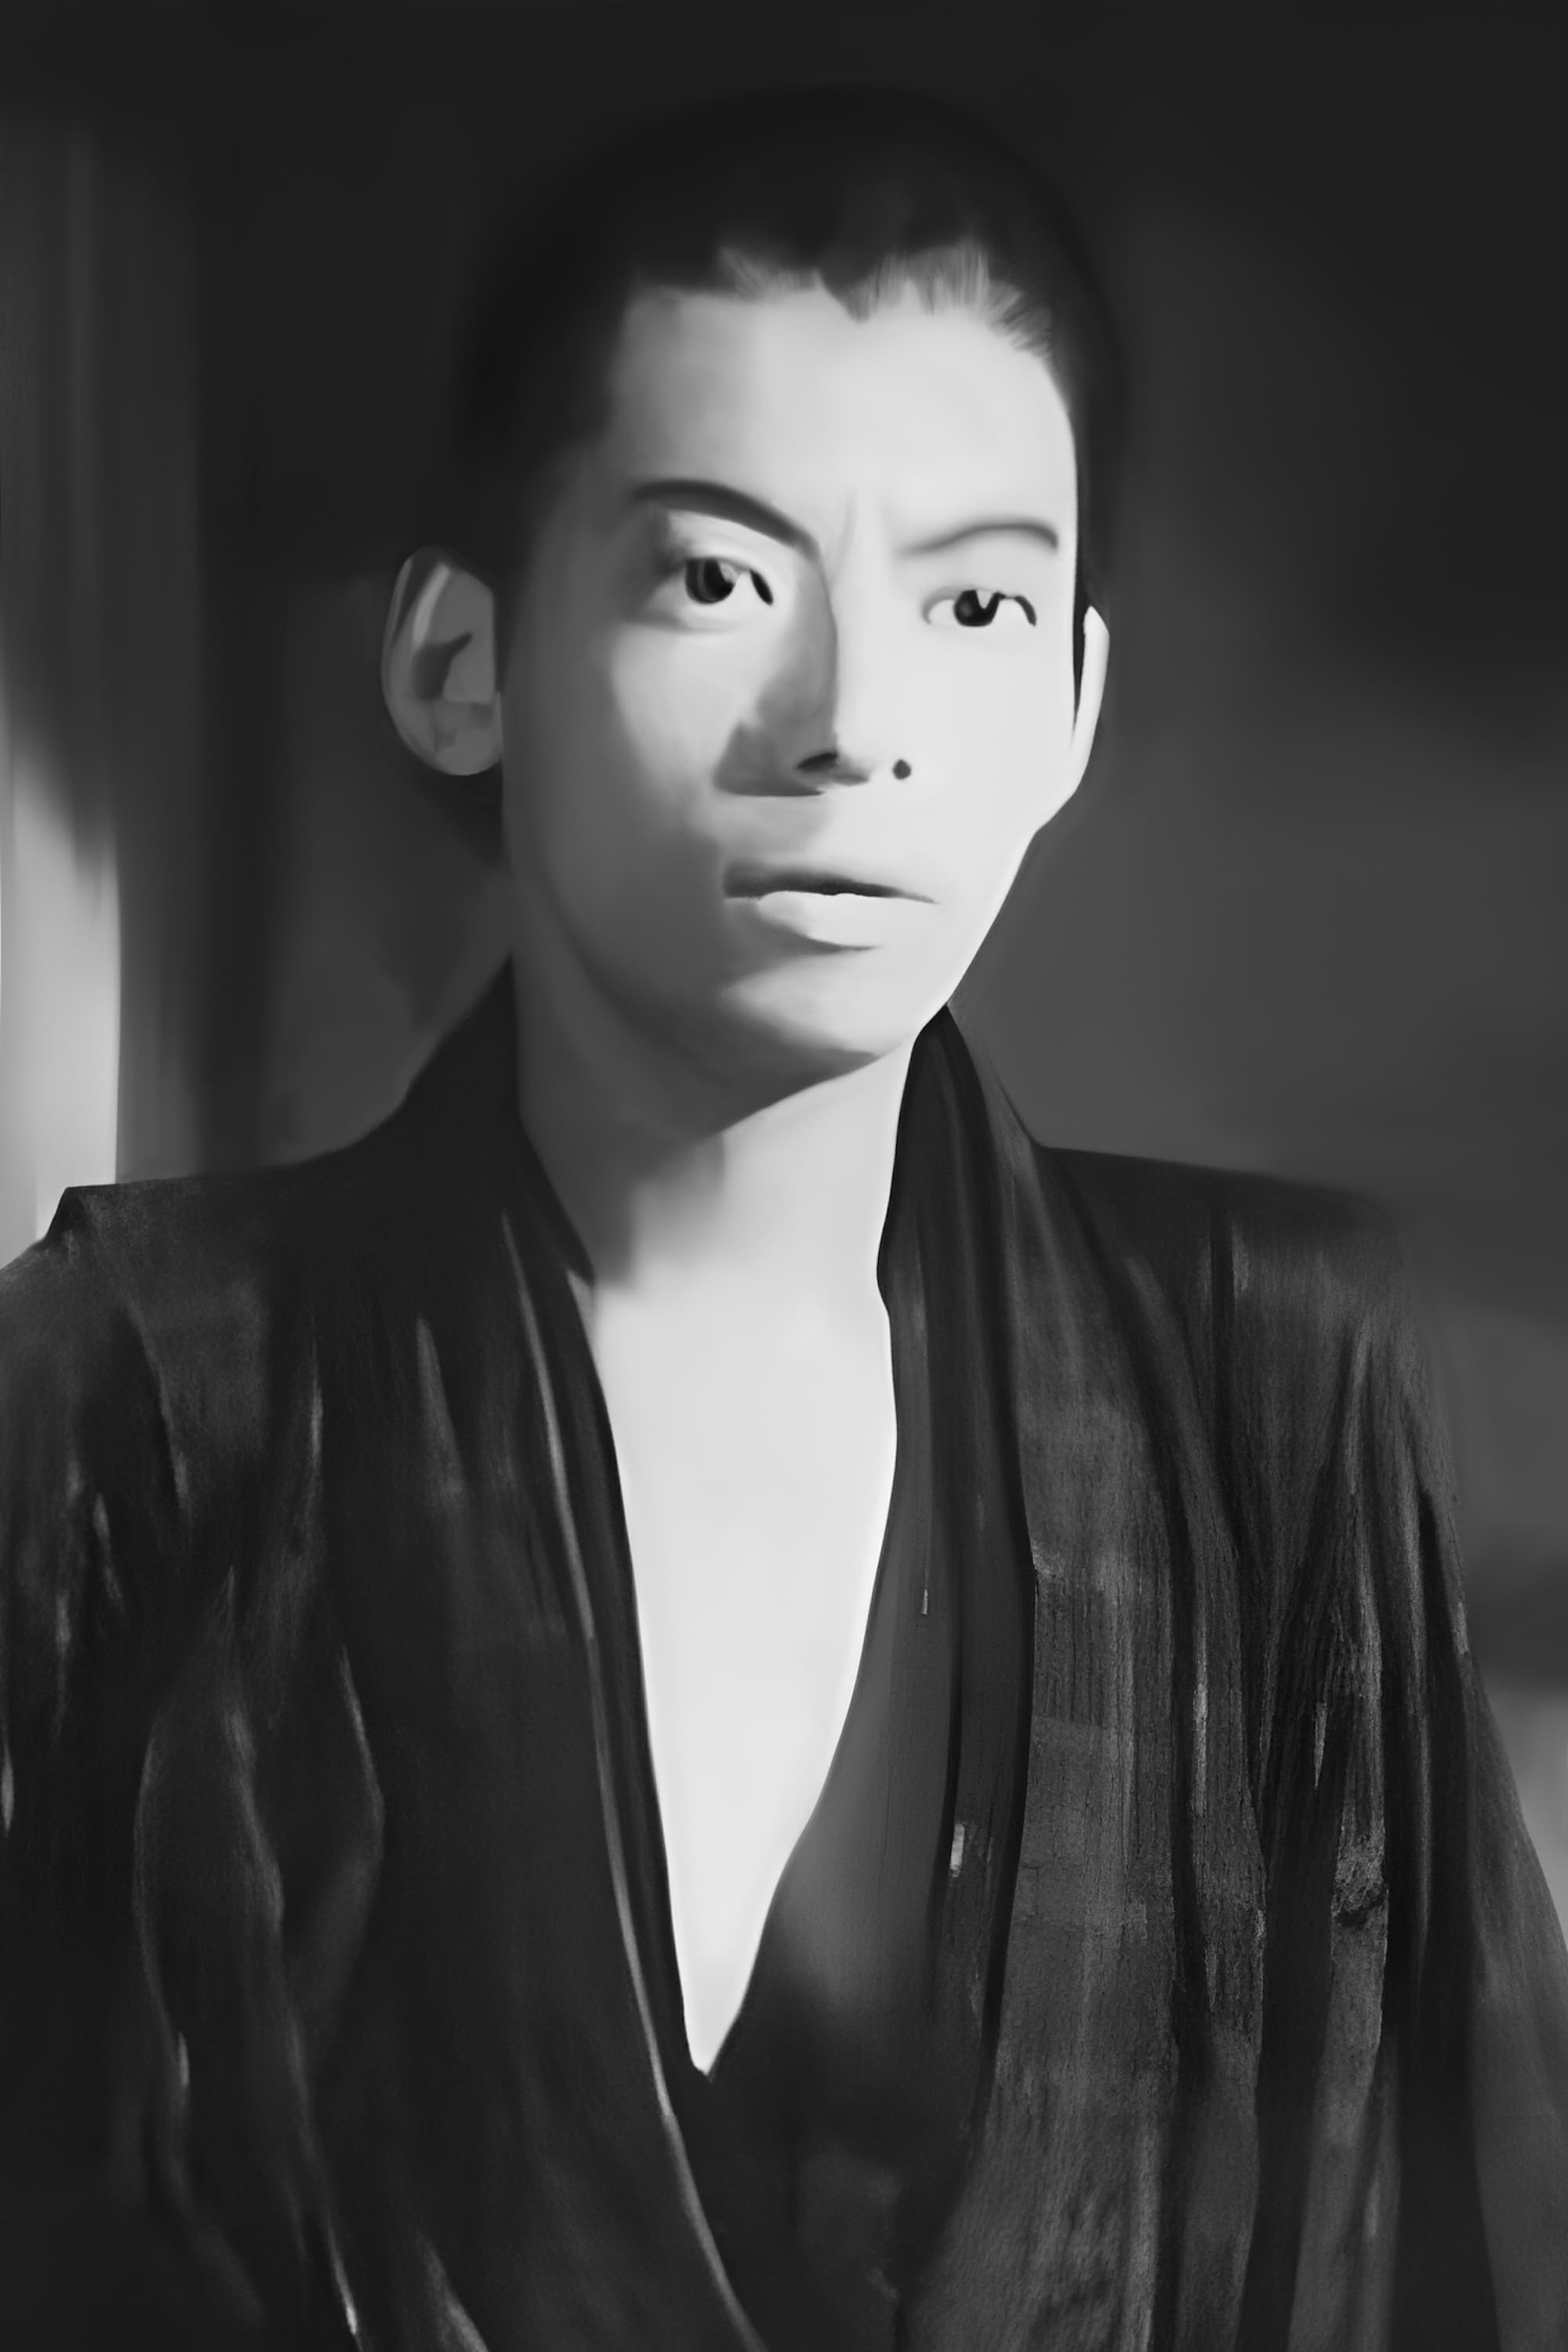 Senkichi Ōmura | Messenger Passing Note to Intern